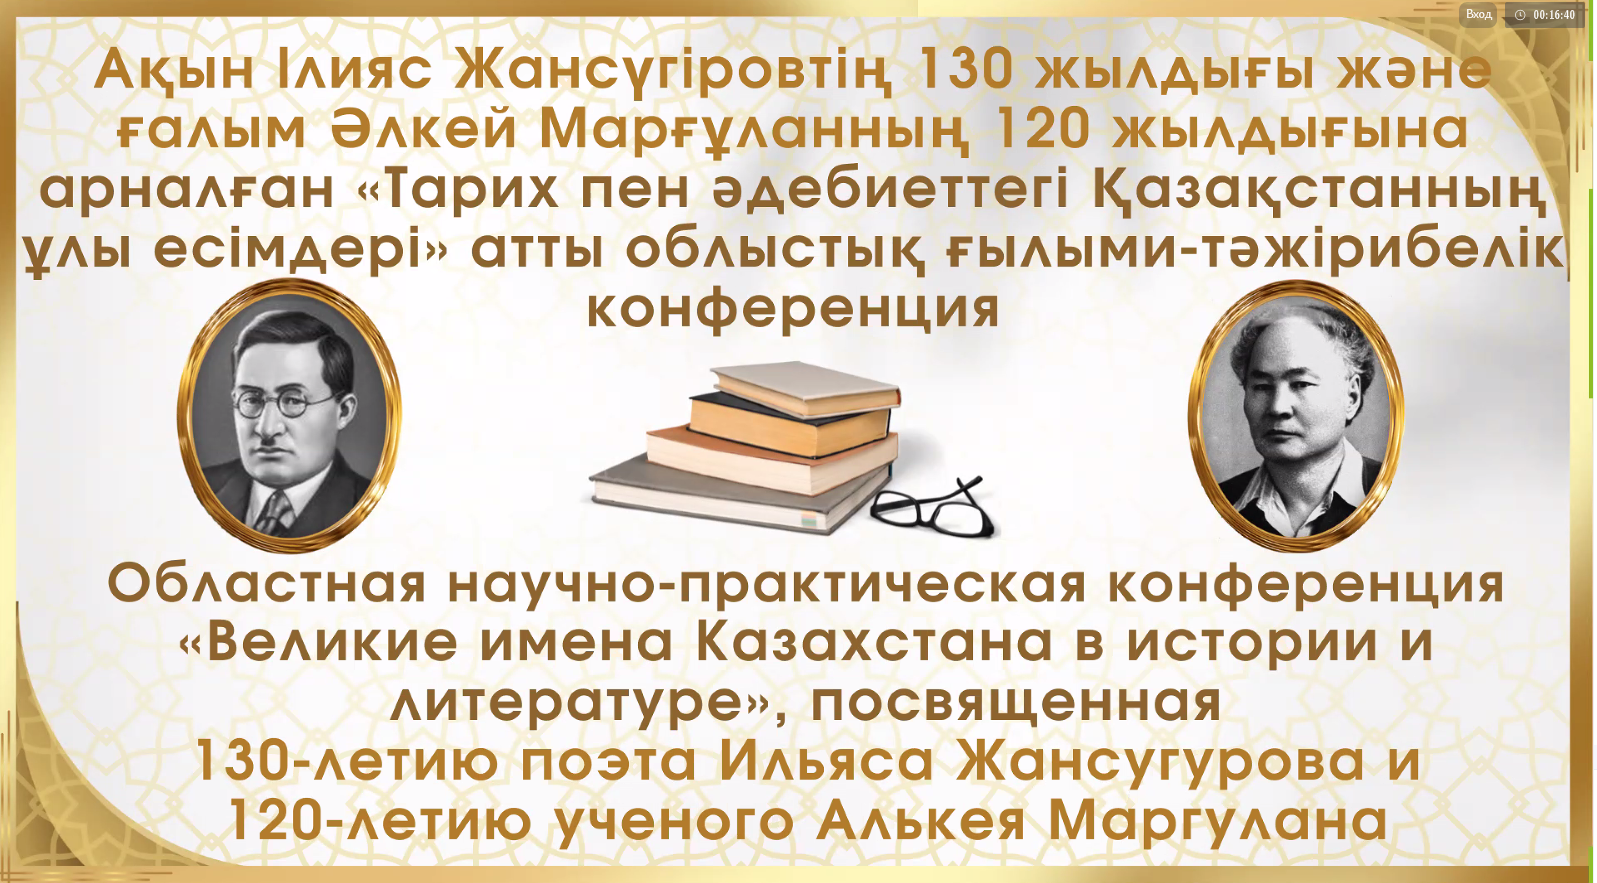 Областная научно-практическая конференция  «Великие имена Казахстана в истории и литературе»